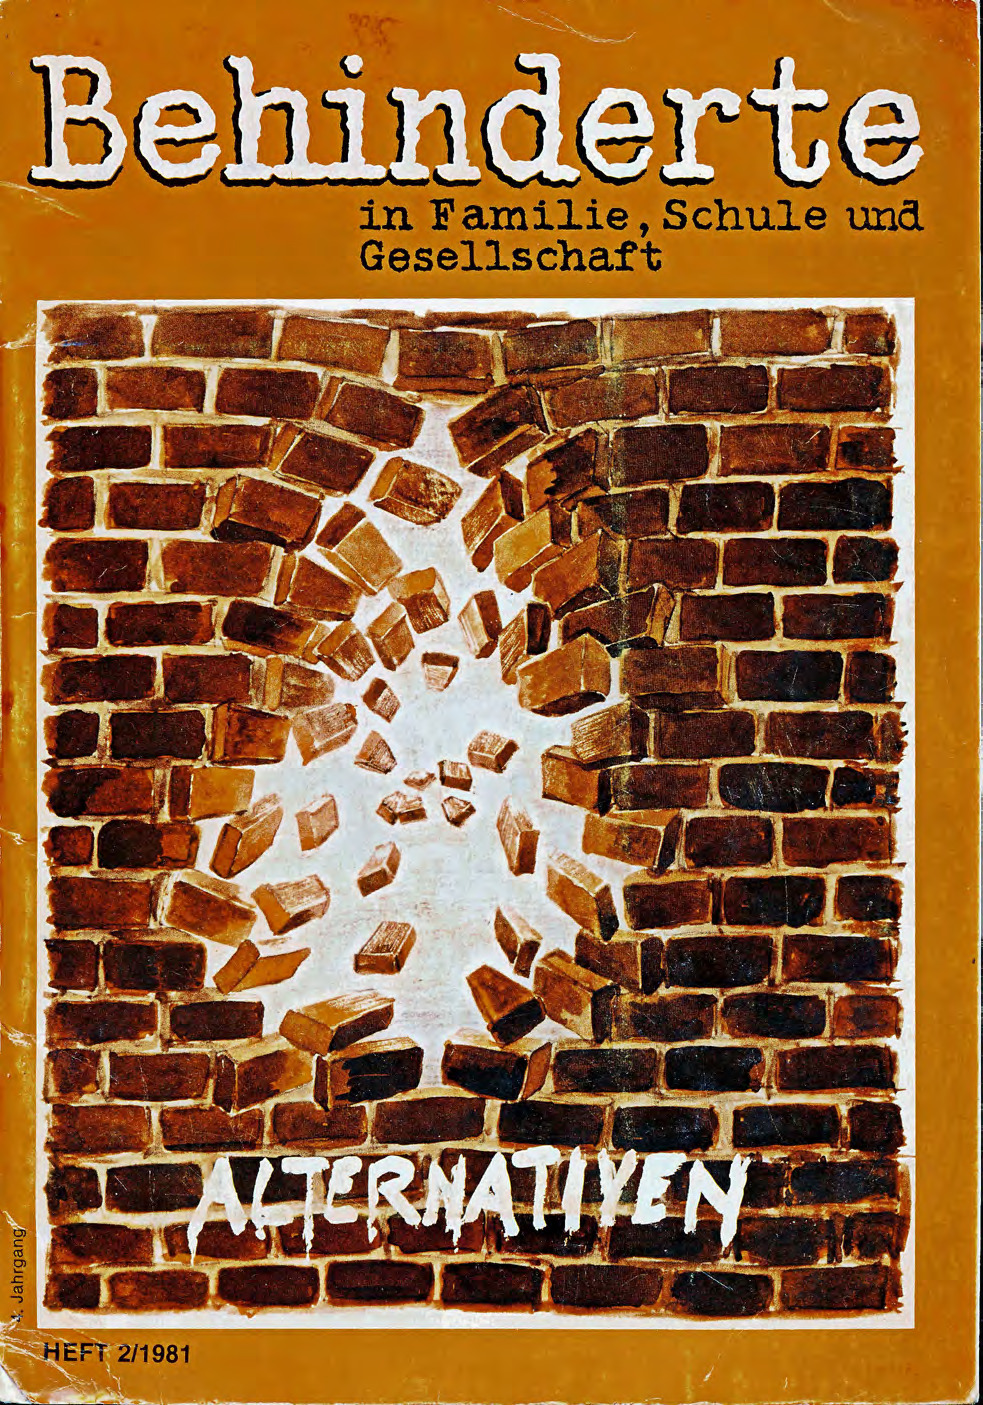 Titelbild der Zeitschrift BEHINDERTE MENSCHEN, Ausgabe 2/1981 "Alternativen"